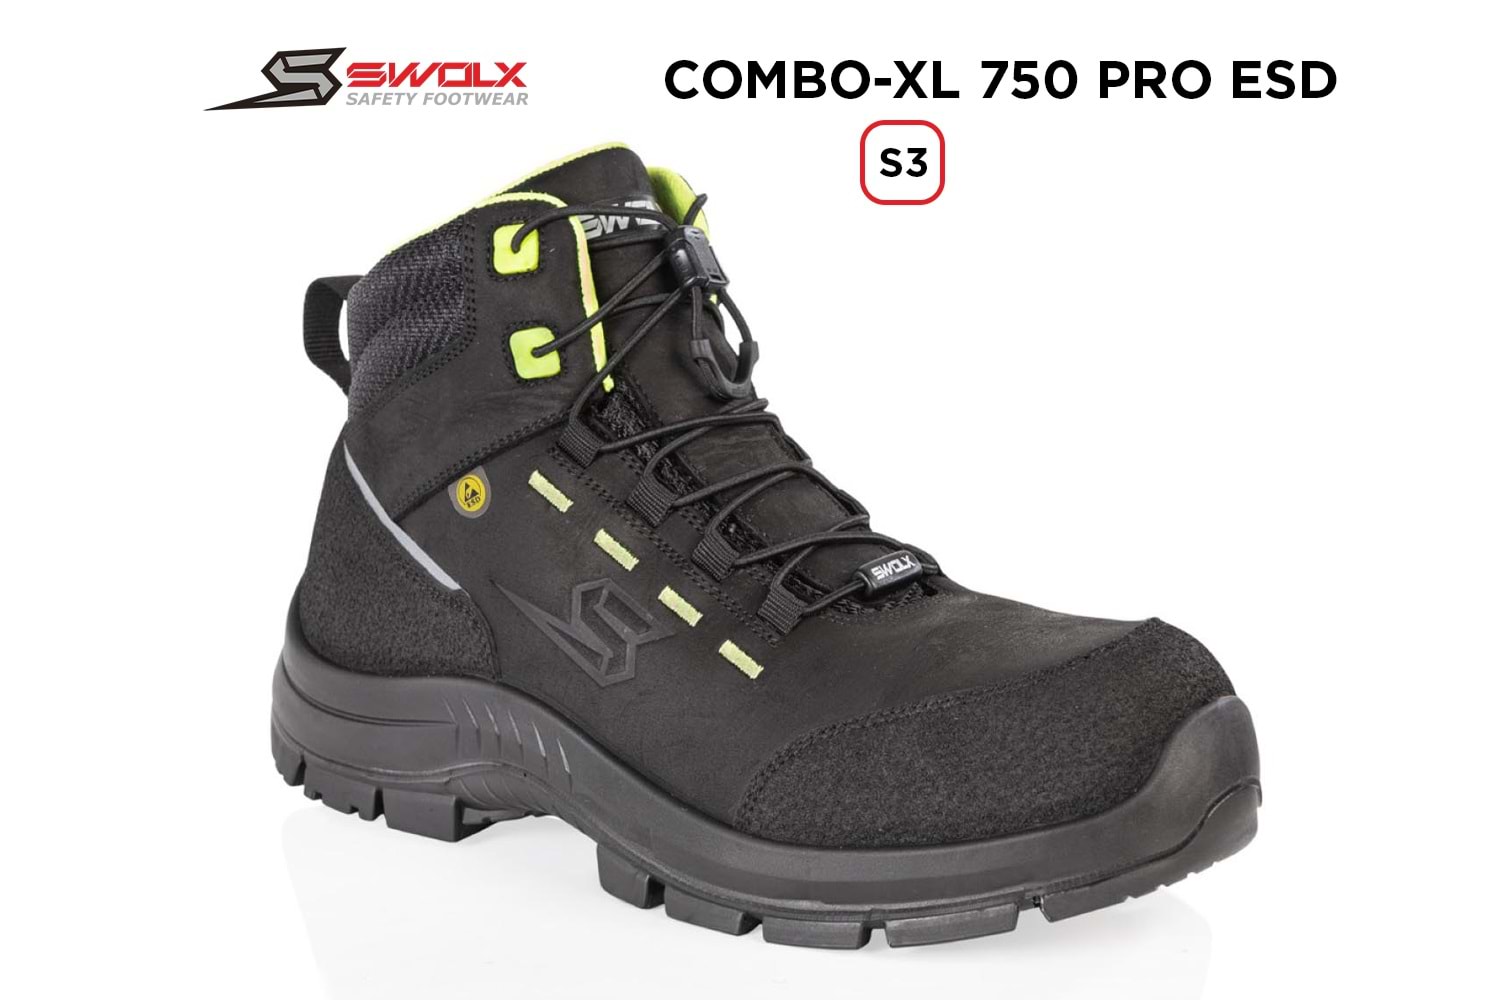 Swolx İş Ayakkabısı - Combo-Xl Pro Esd 750 S3 - 43